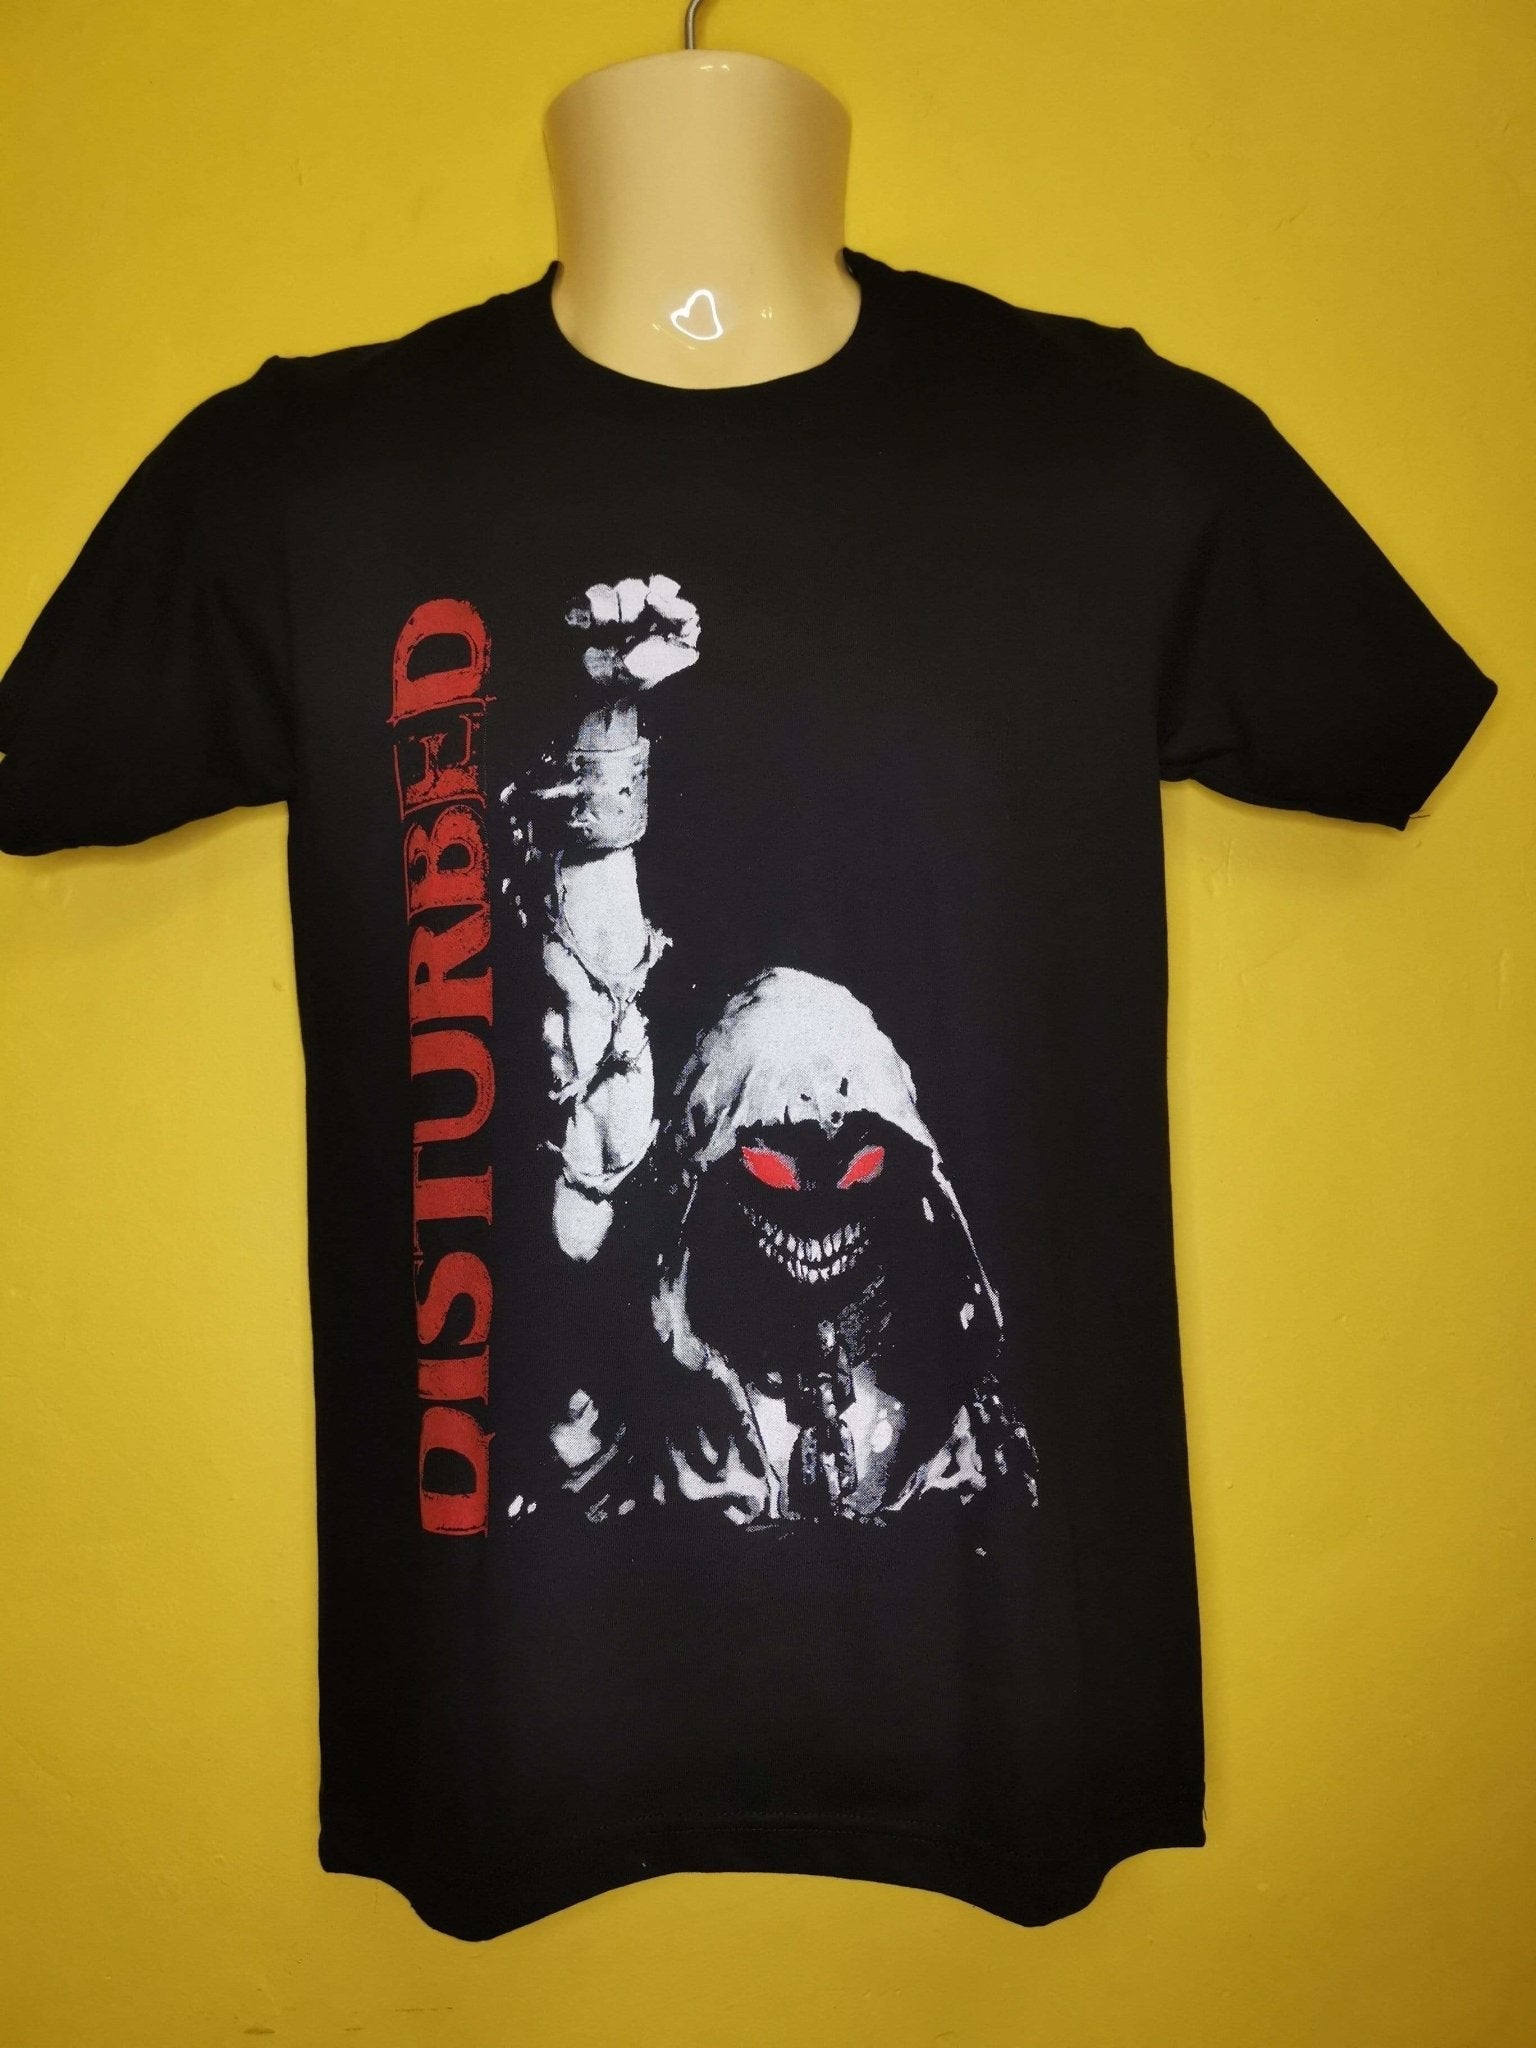 Disturbed T-shirt